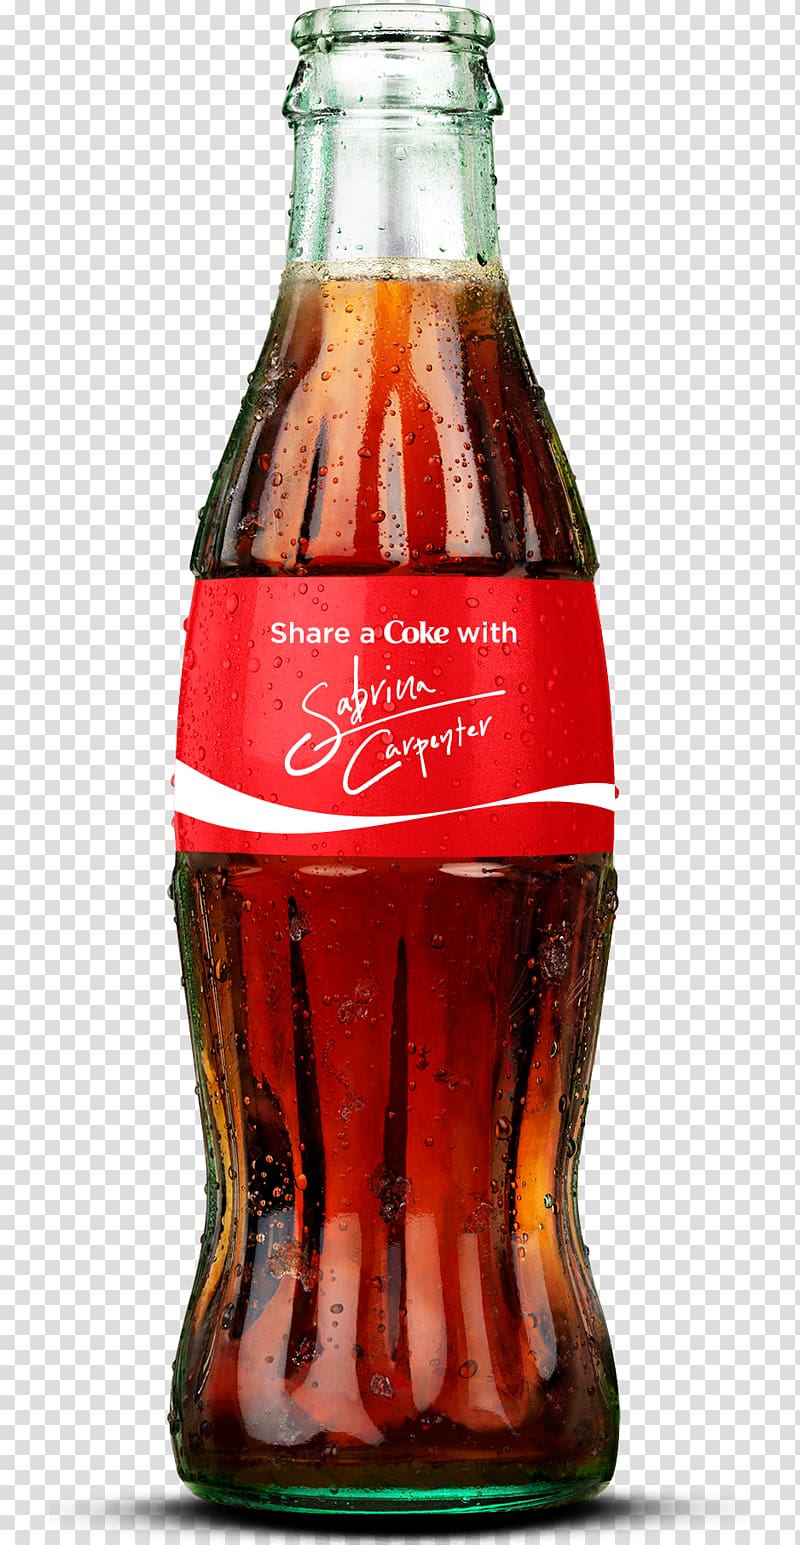 Coca-Cola Fizzy Drinks Diet Coke Bottle, coke transparent background PNG clipart